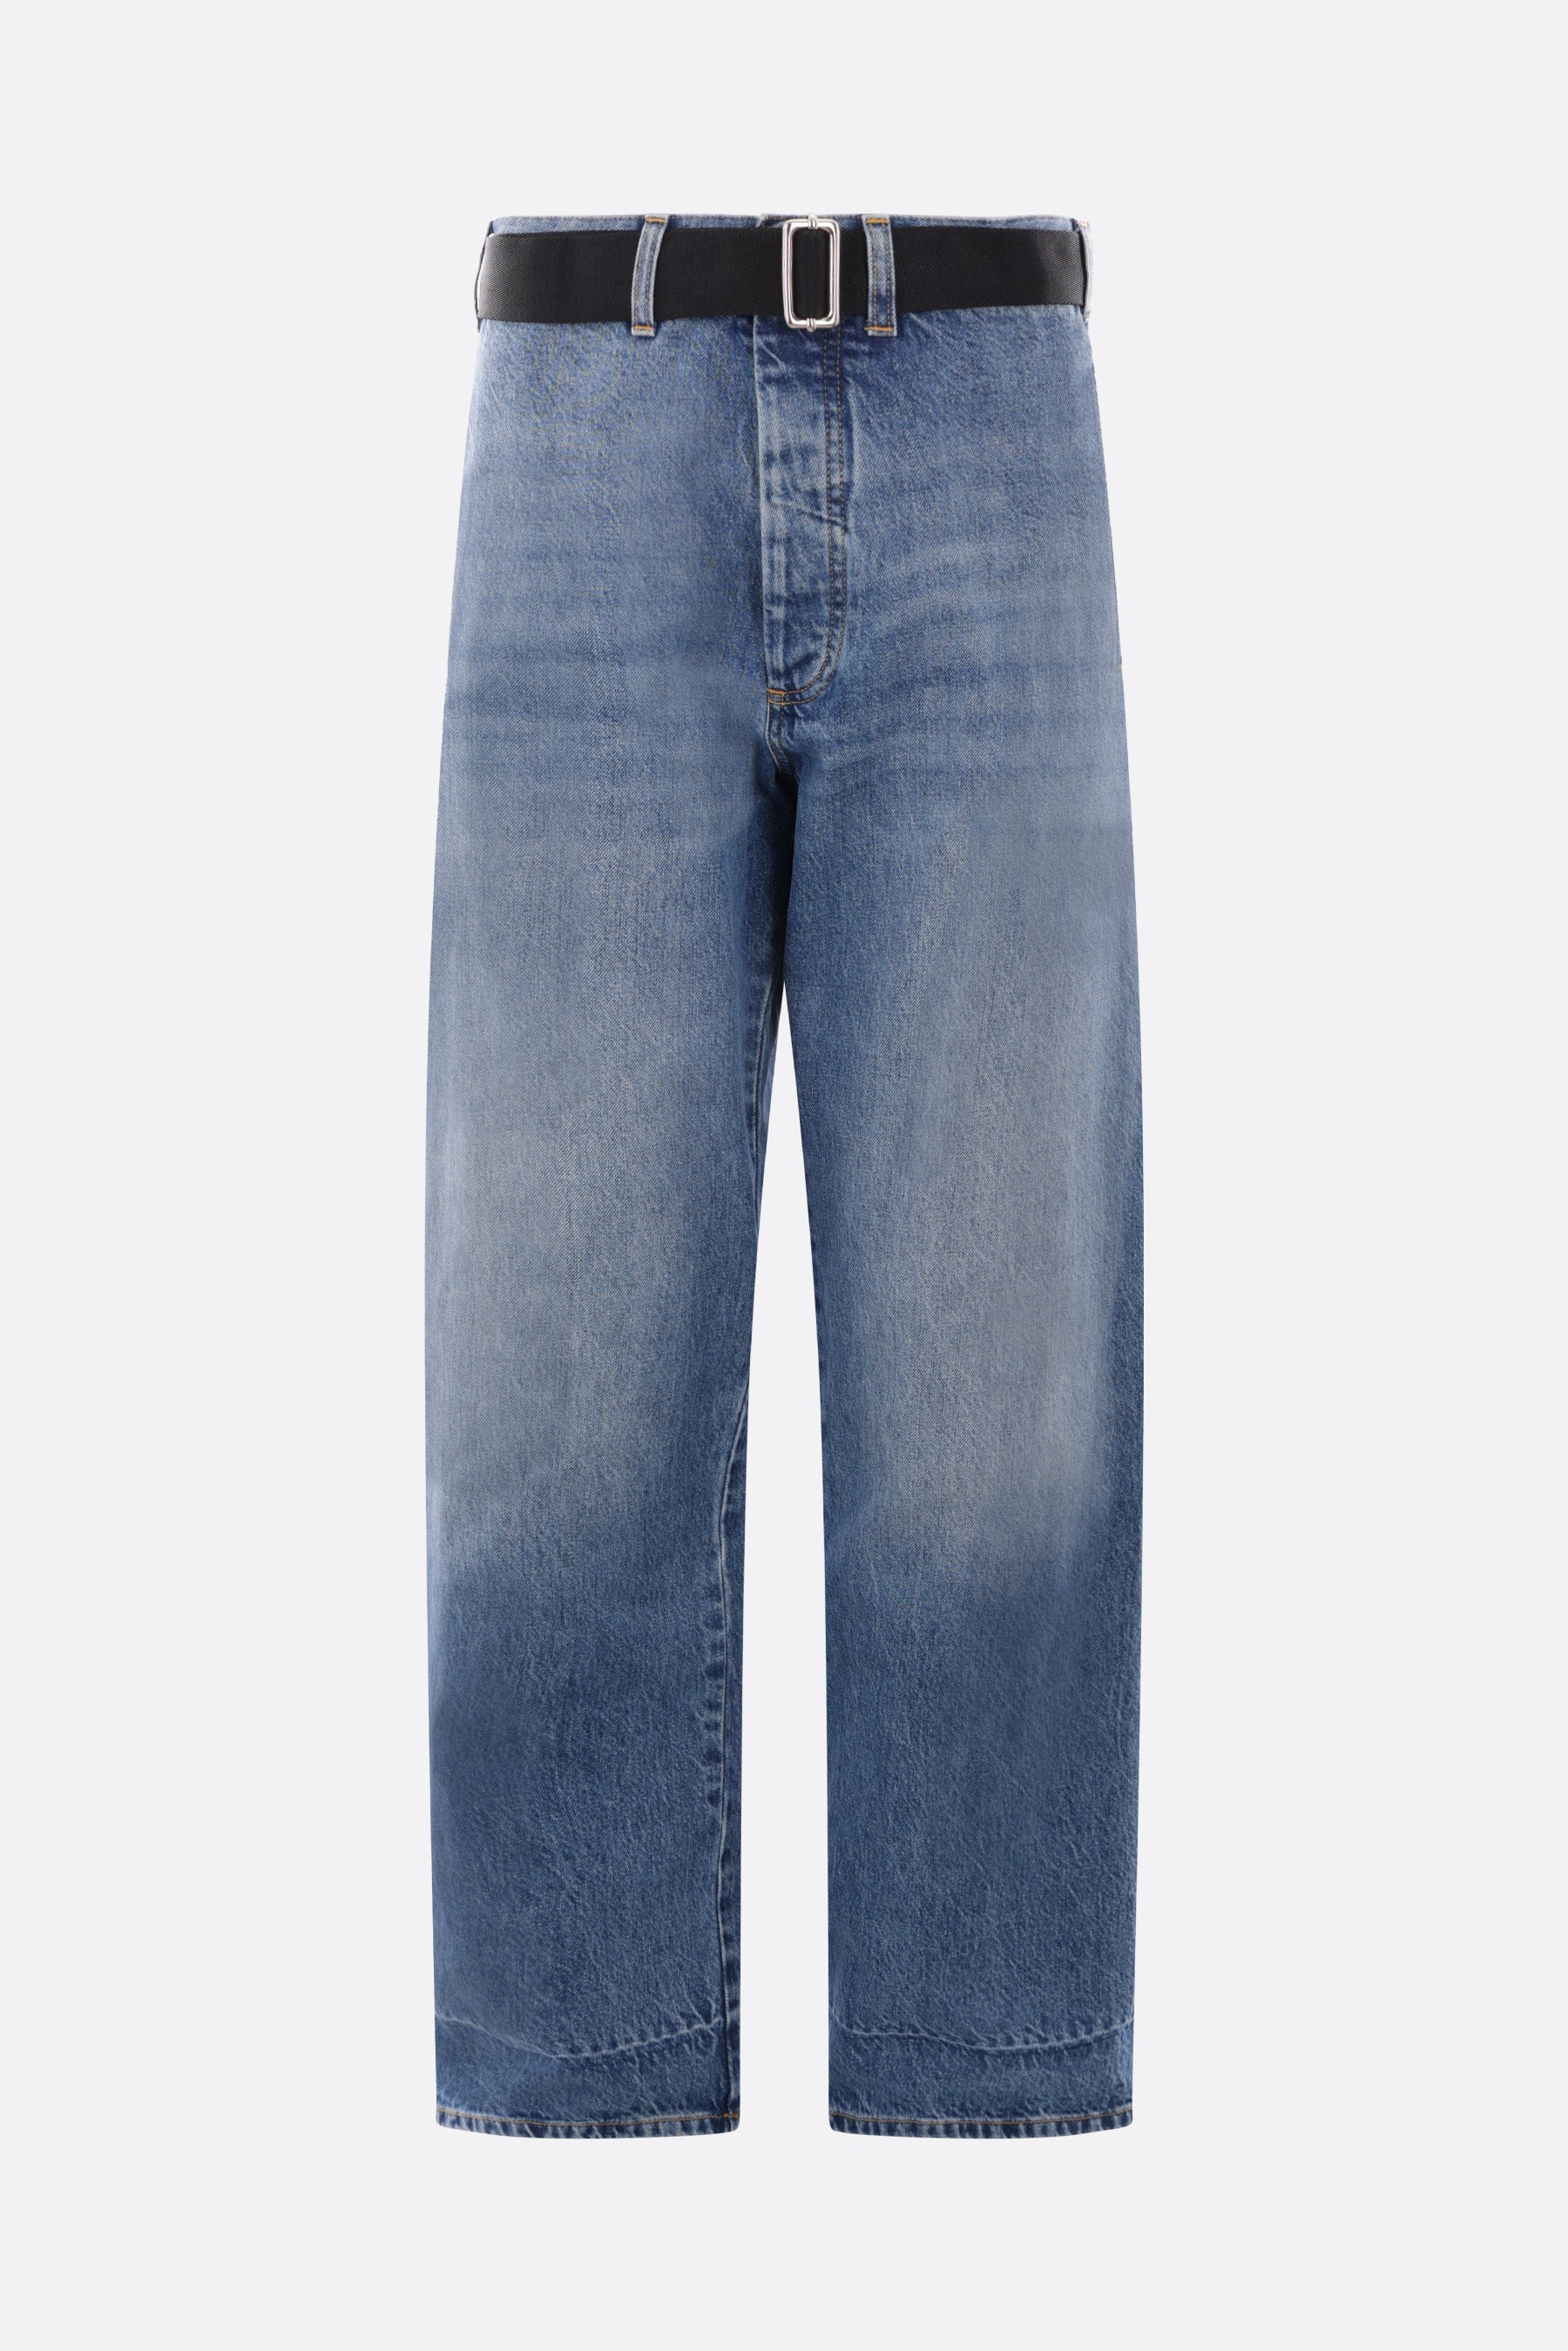 jeans oversize in denim